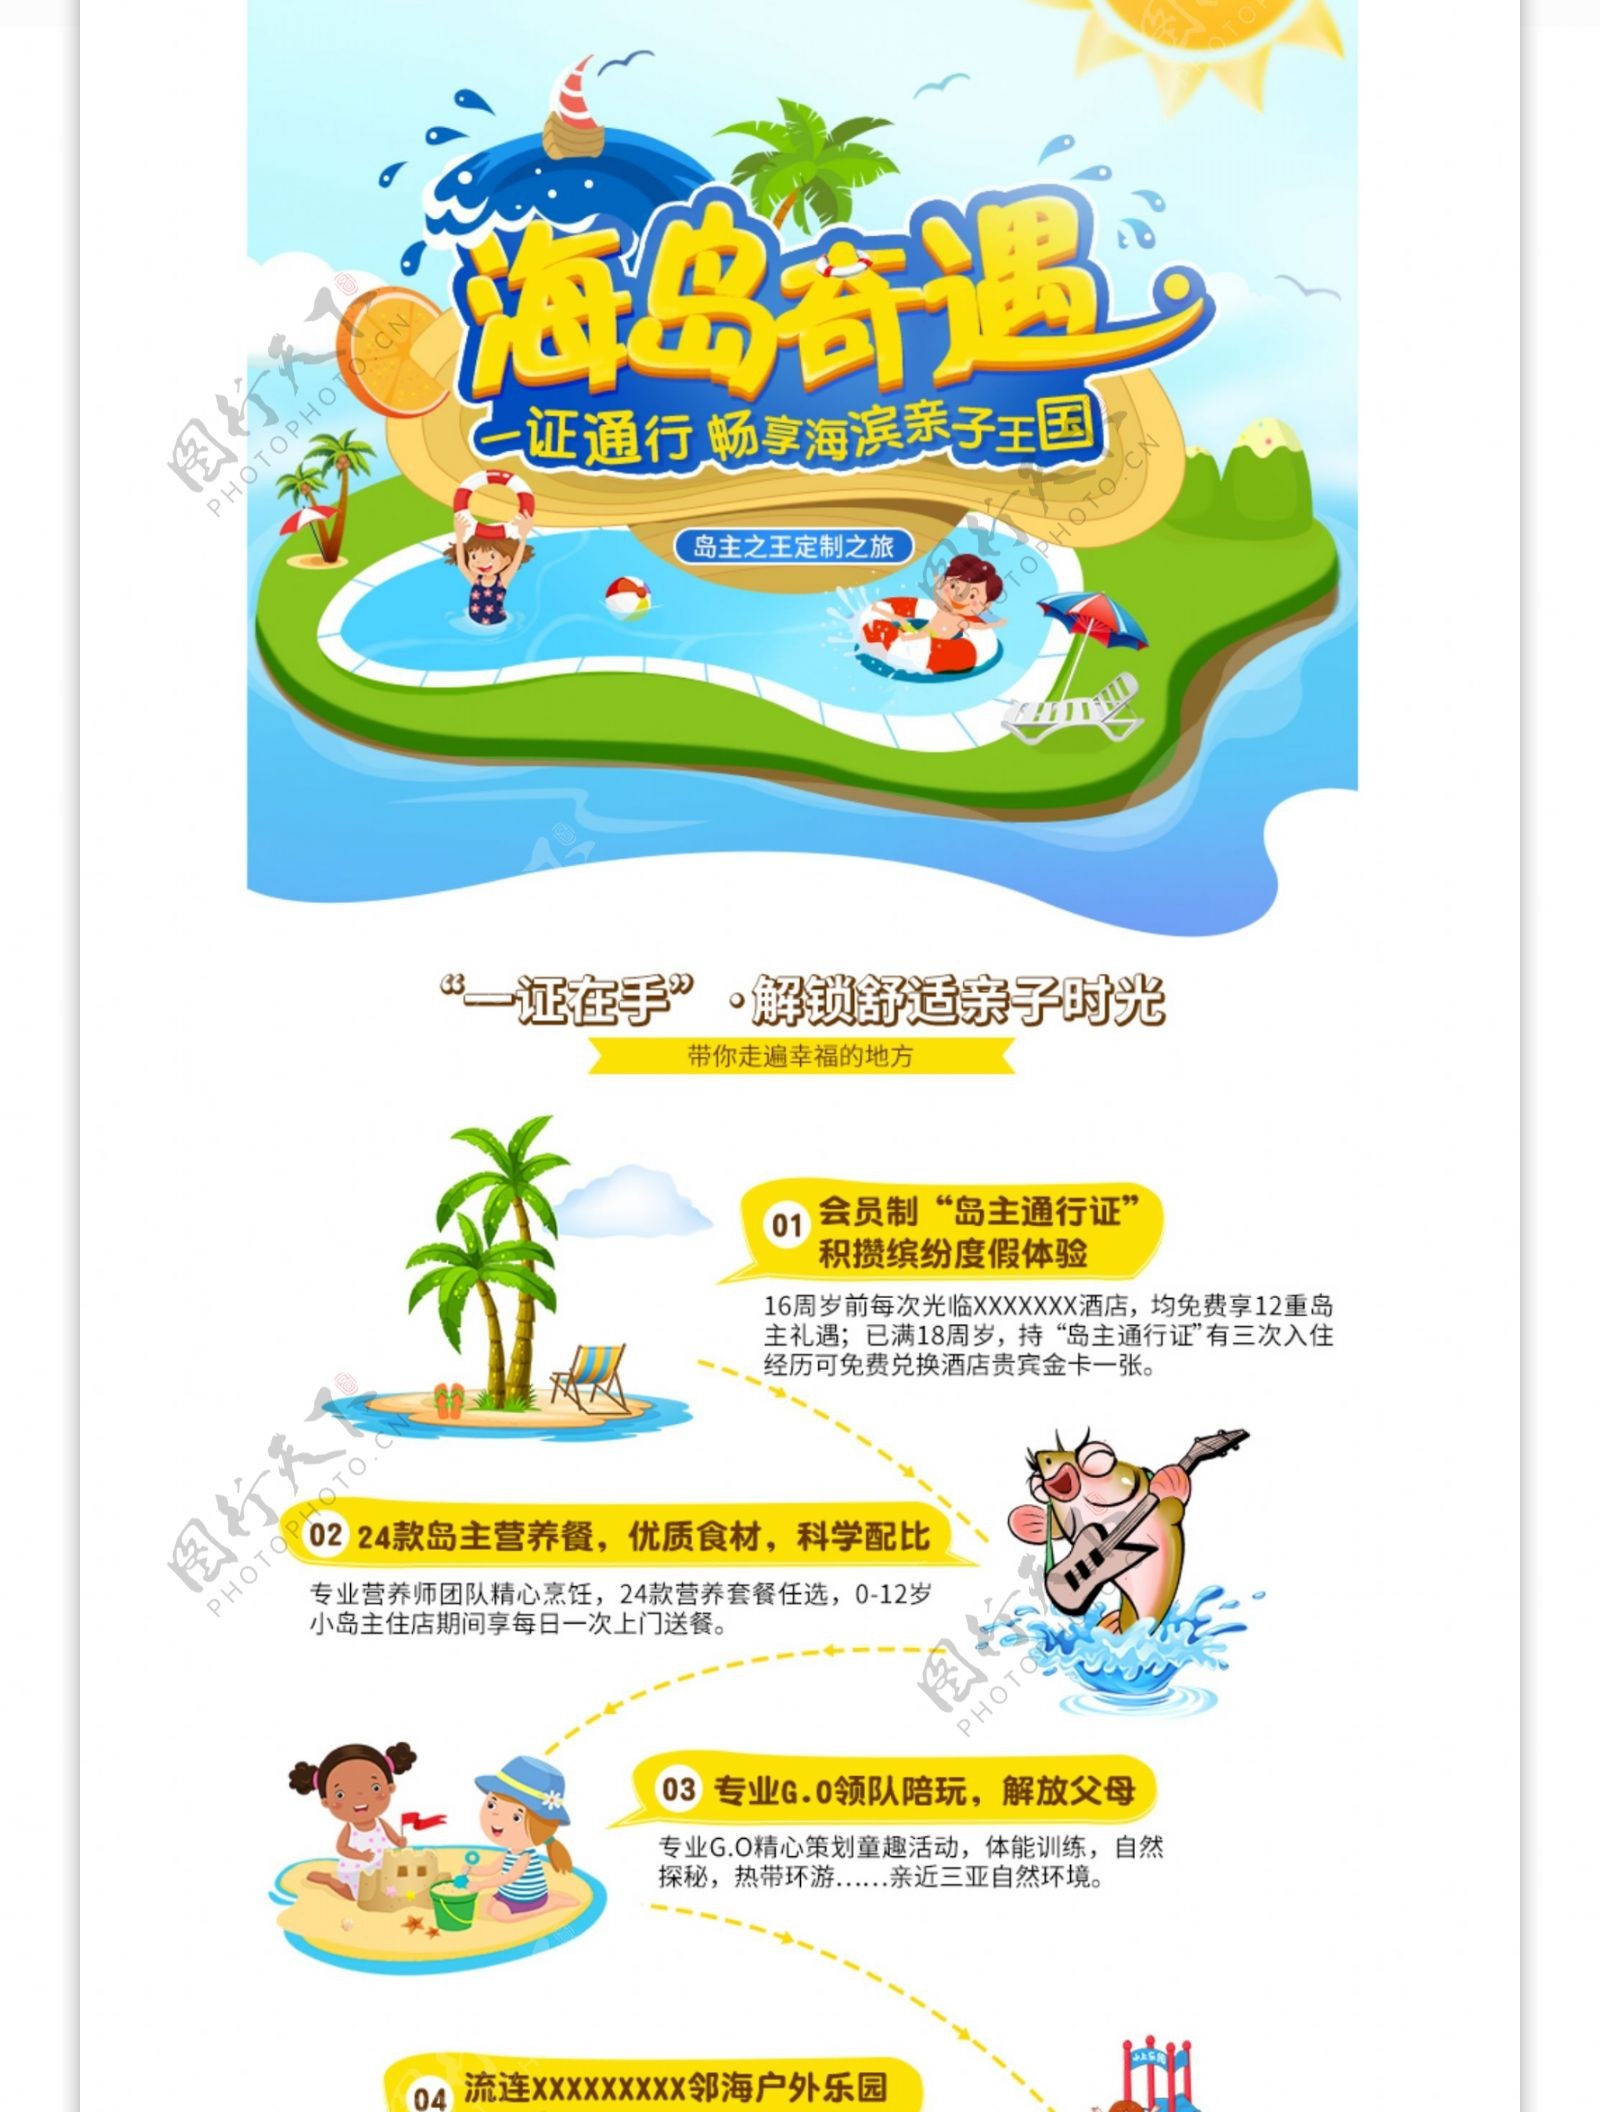 淘宝天猫三亚海岛旅游旅行卡通详情页